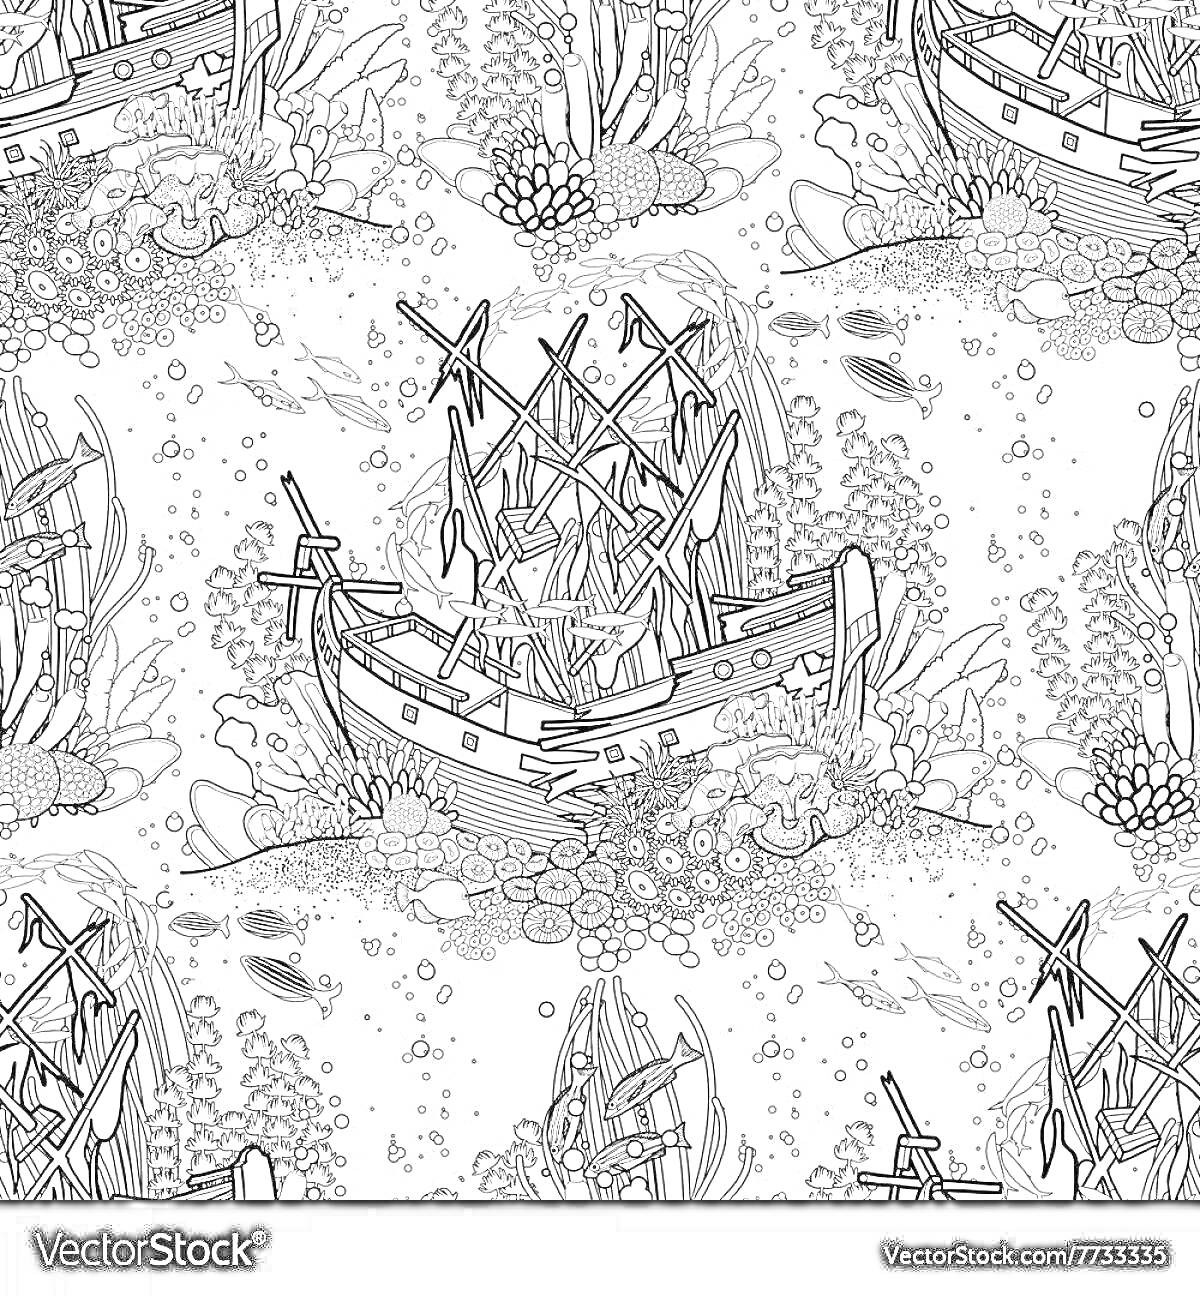 На раскраске изображено: Затонувший корабль, Кораллы, Подводный мир, Морская флора, Подводная жизнь, Морское дно